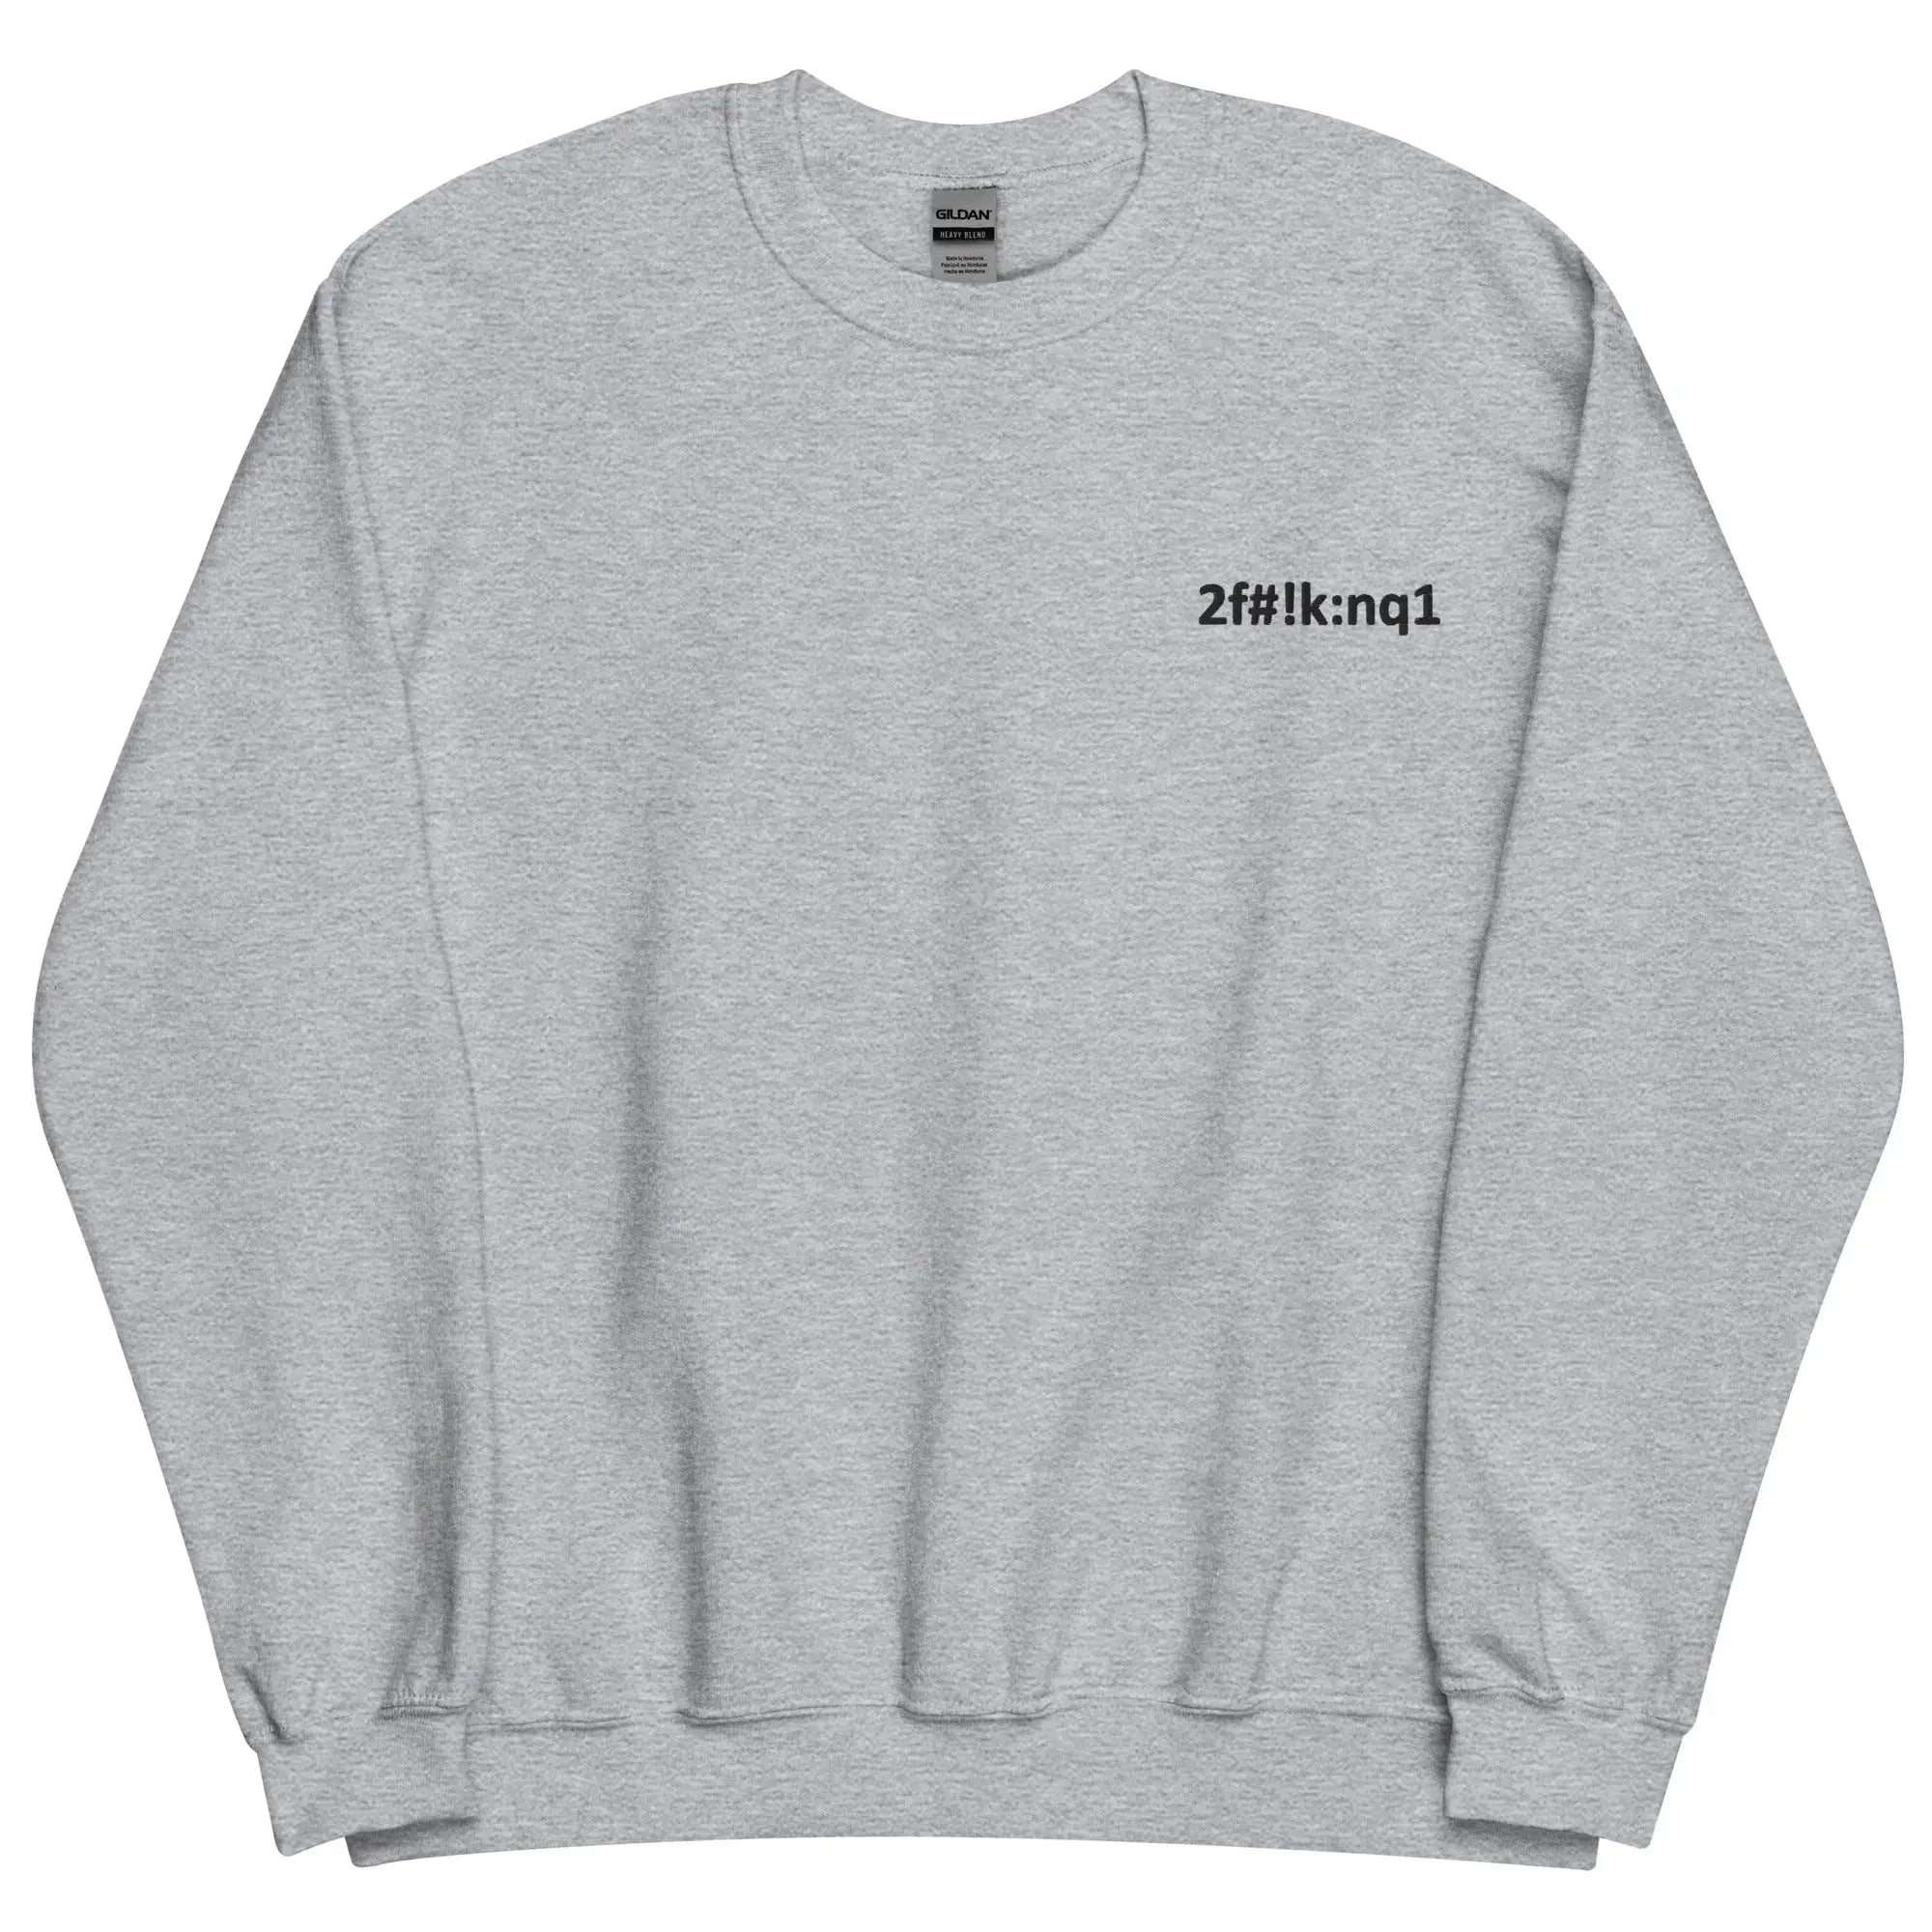 Basic Sweatshirt TFO